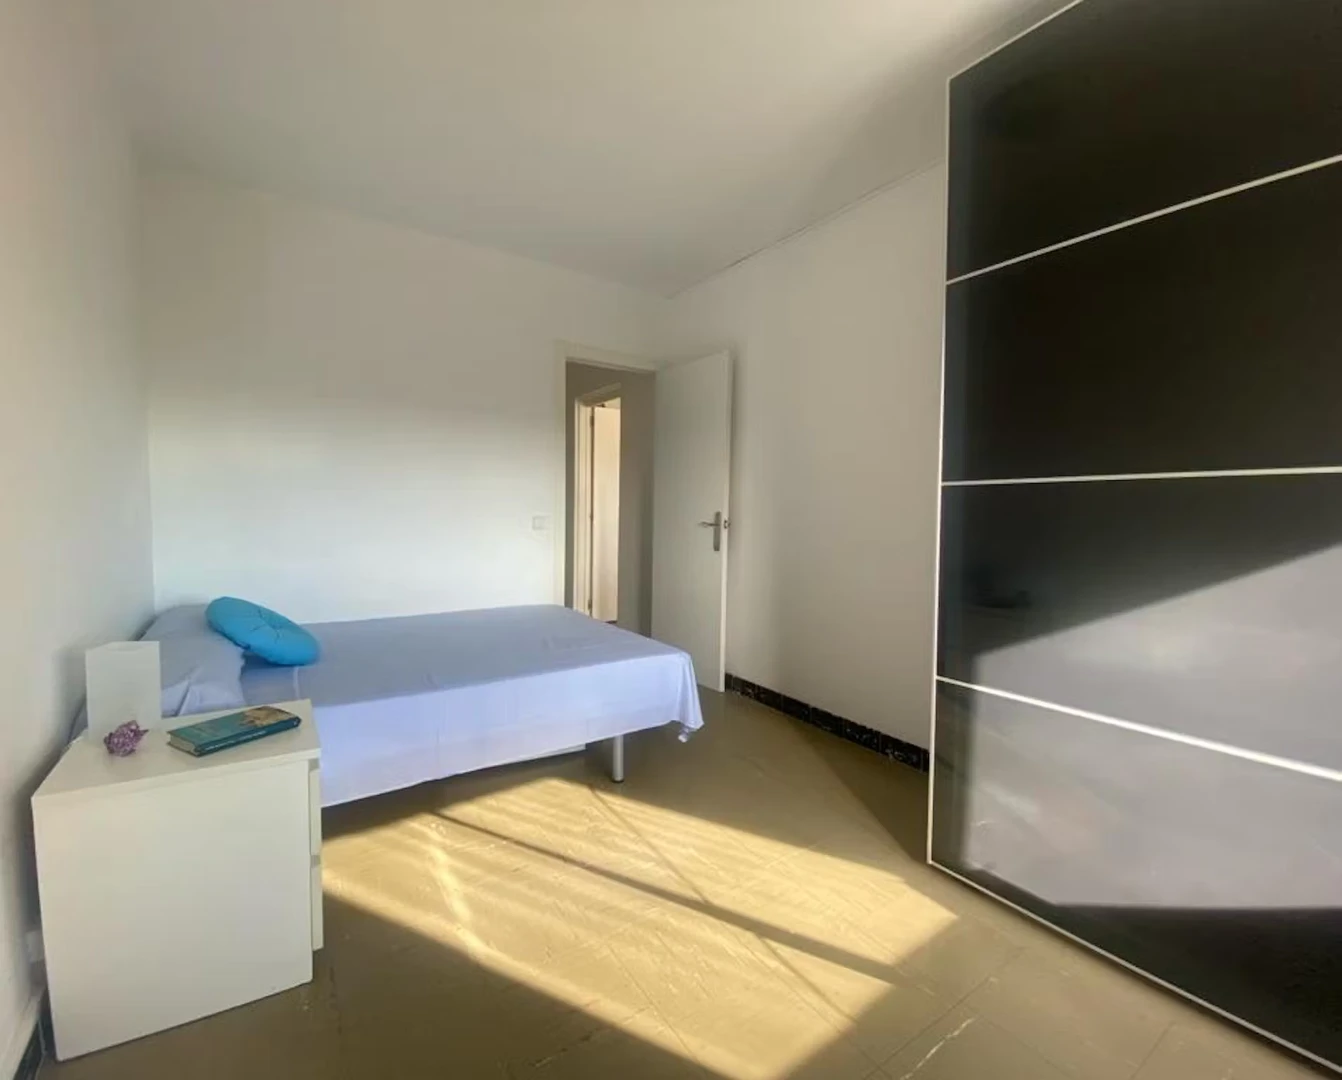 Alquiler de habitación en piso compartido en Sabadell